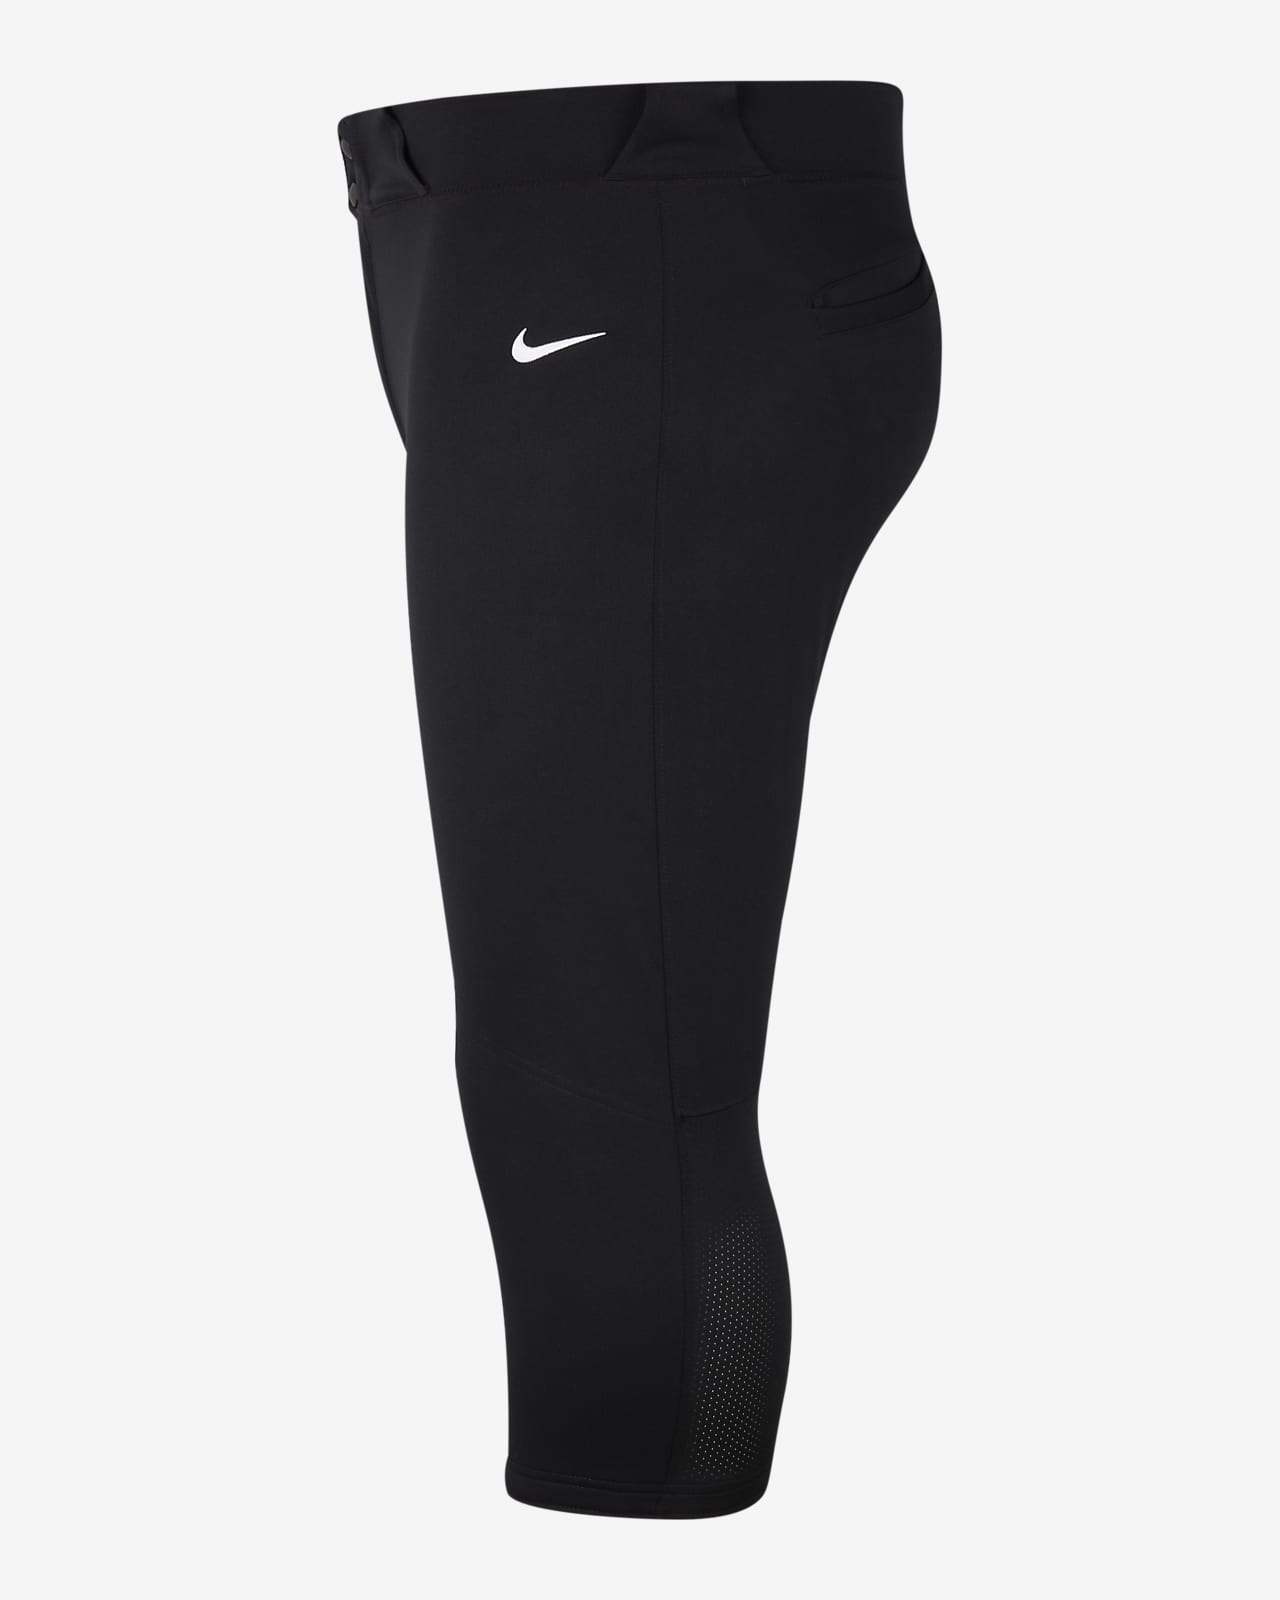 Nike  Black Youth XL Baseball Football Pants Back Pocket Elastic